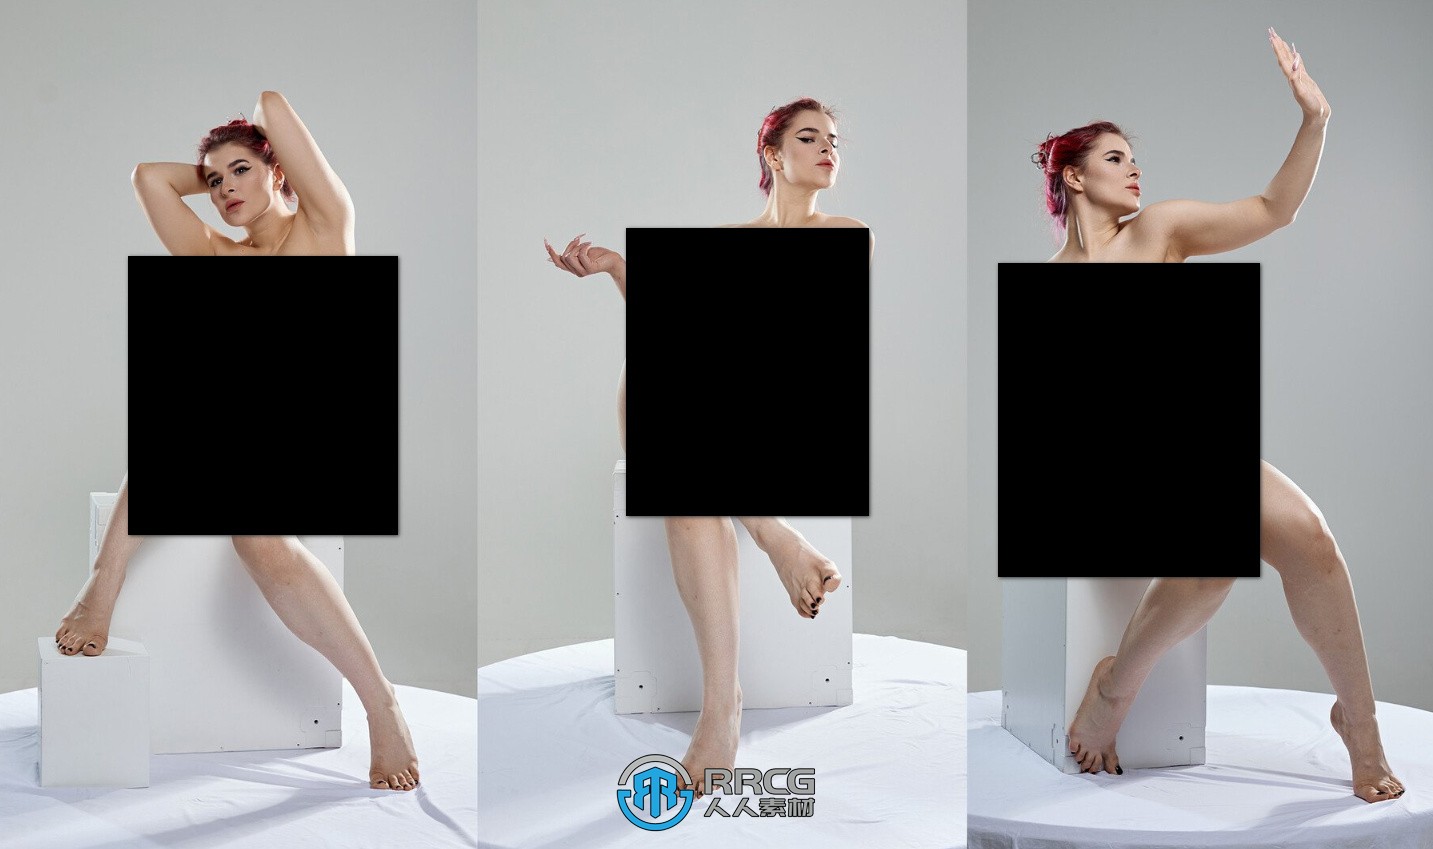 746张迷人女性艺术姿势造型高清参考图合集